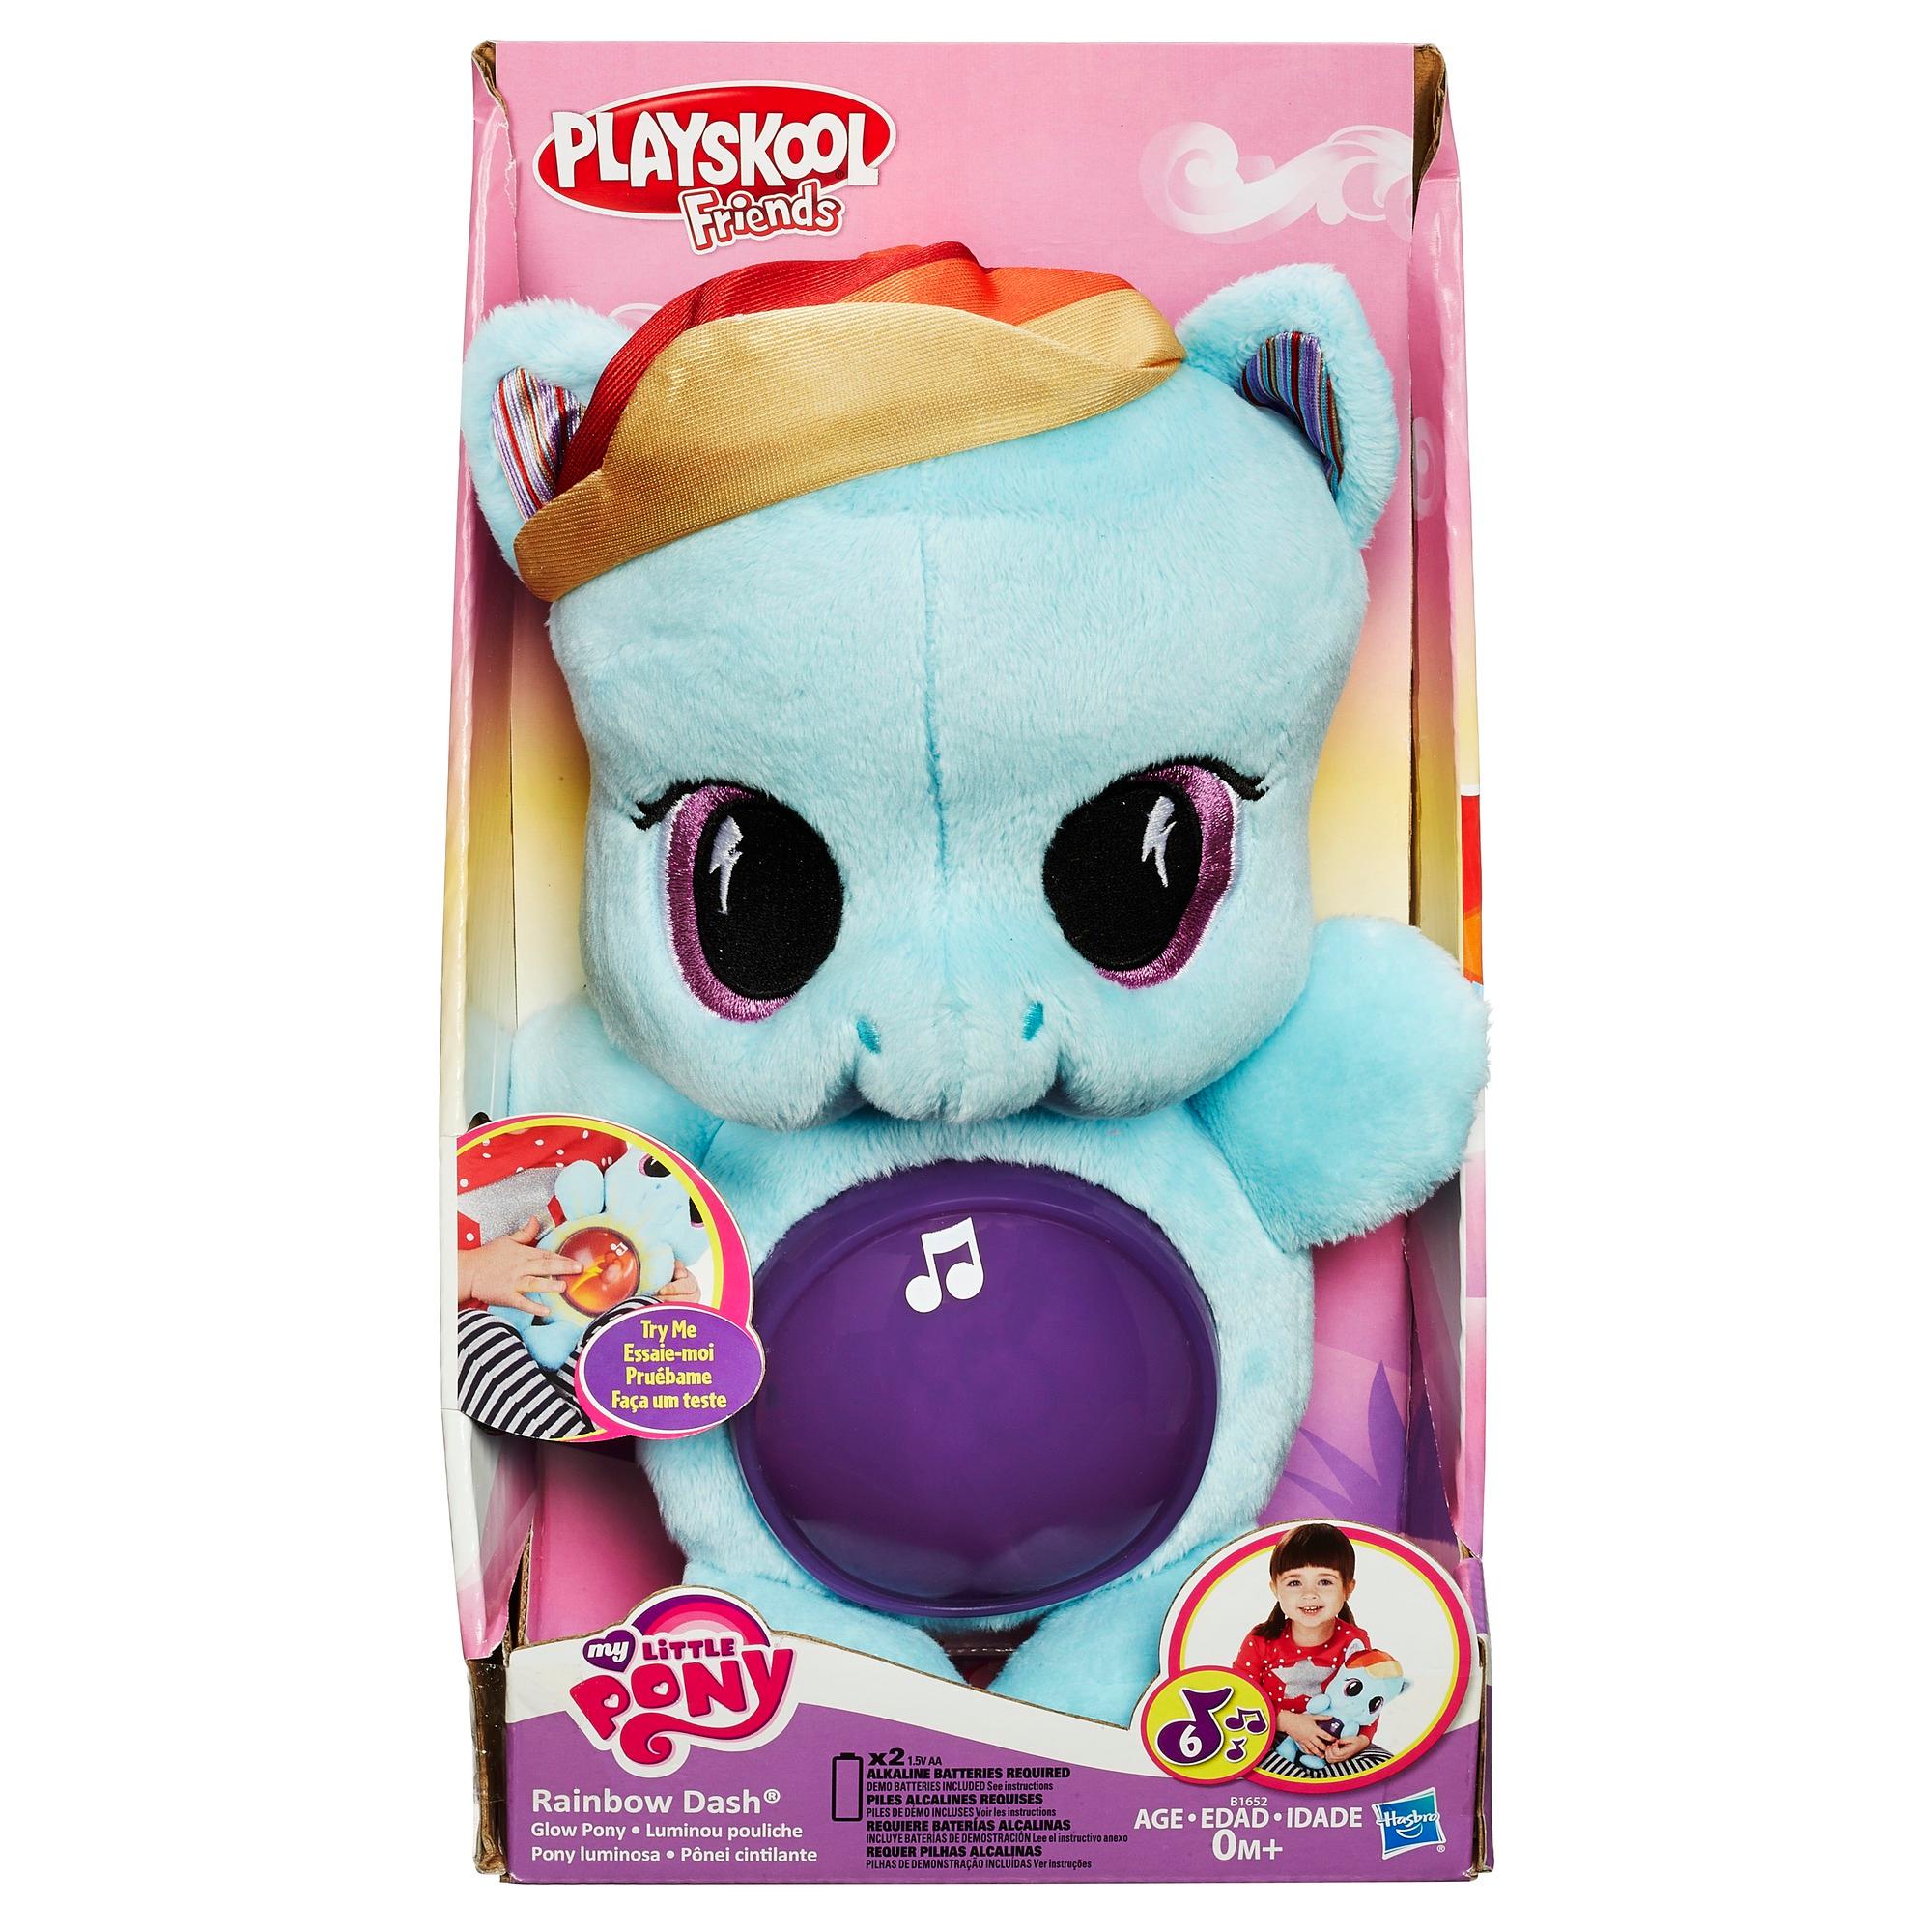 Мягкая игрушка Рейнбоу Дэш, светится, серия Playskool friends, My Little Pony  